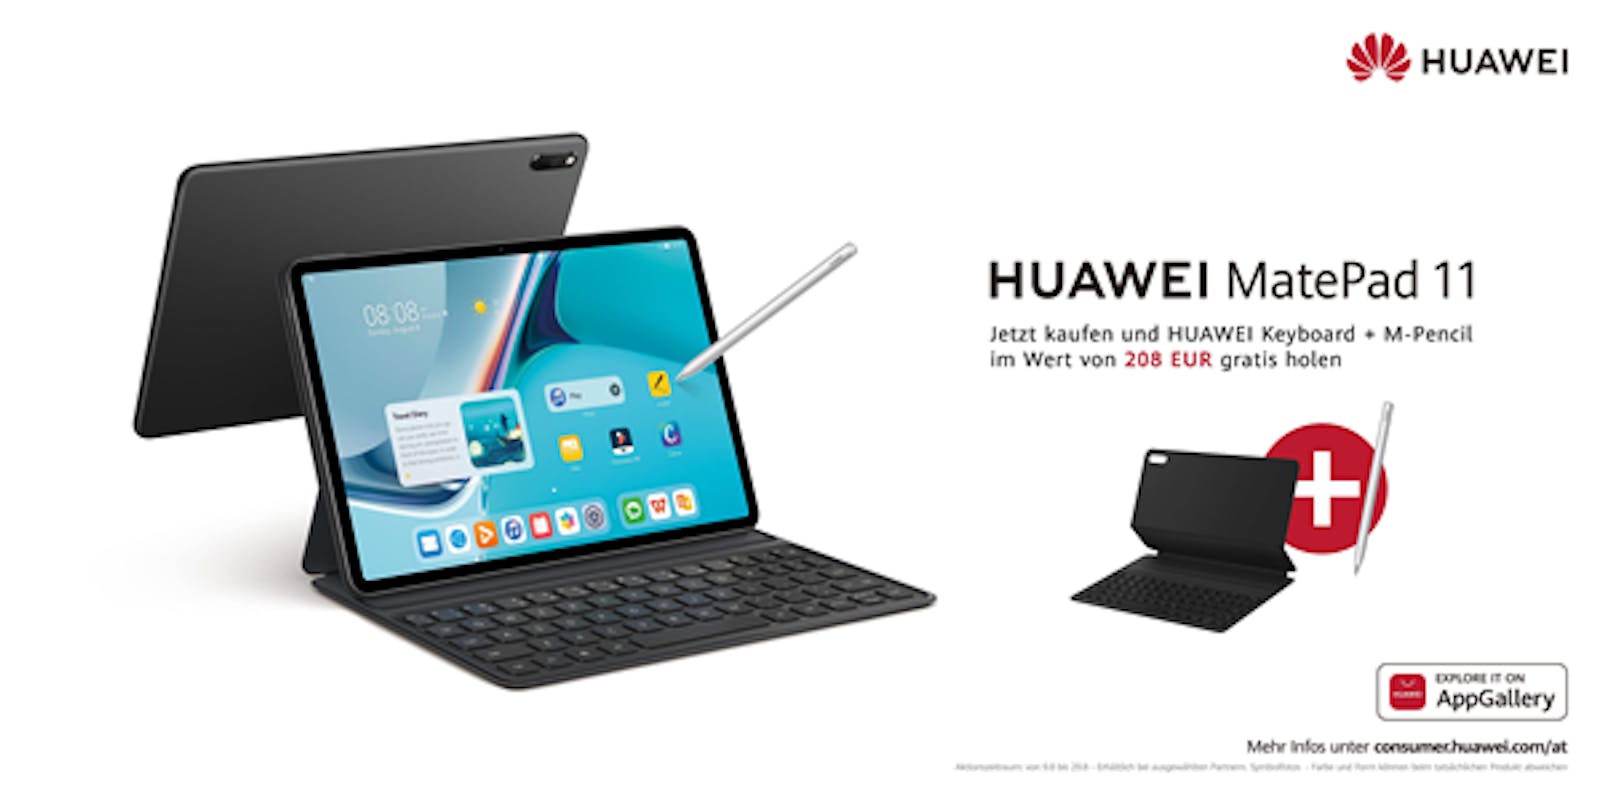 Das neue Huawei MatePad 11: Das vielseitige Multitalent für den Alltag.